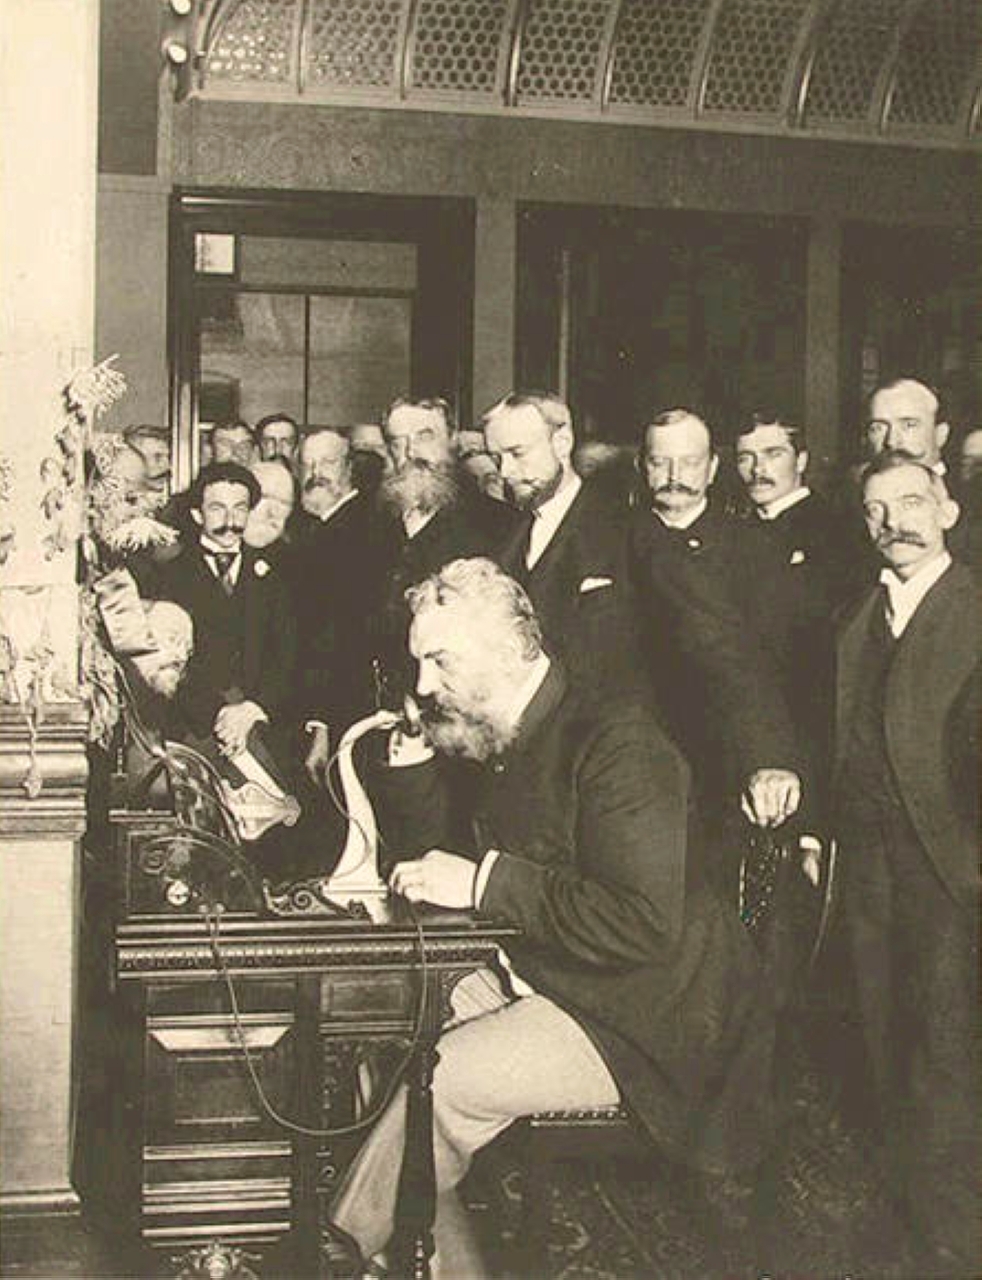 الصورة : 1876 ألكسندر غراهام بيل يحصل على براءة اختراع الهاتف.